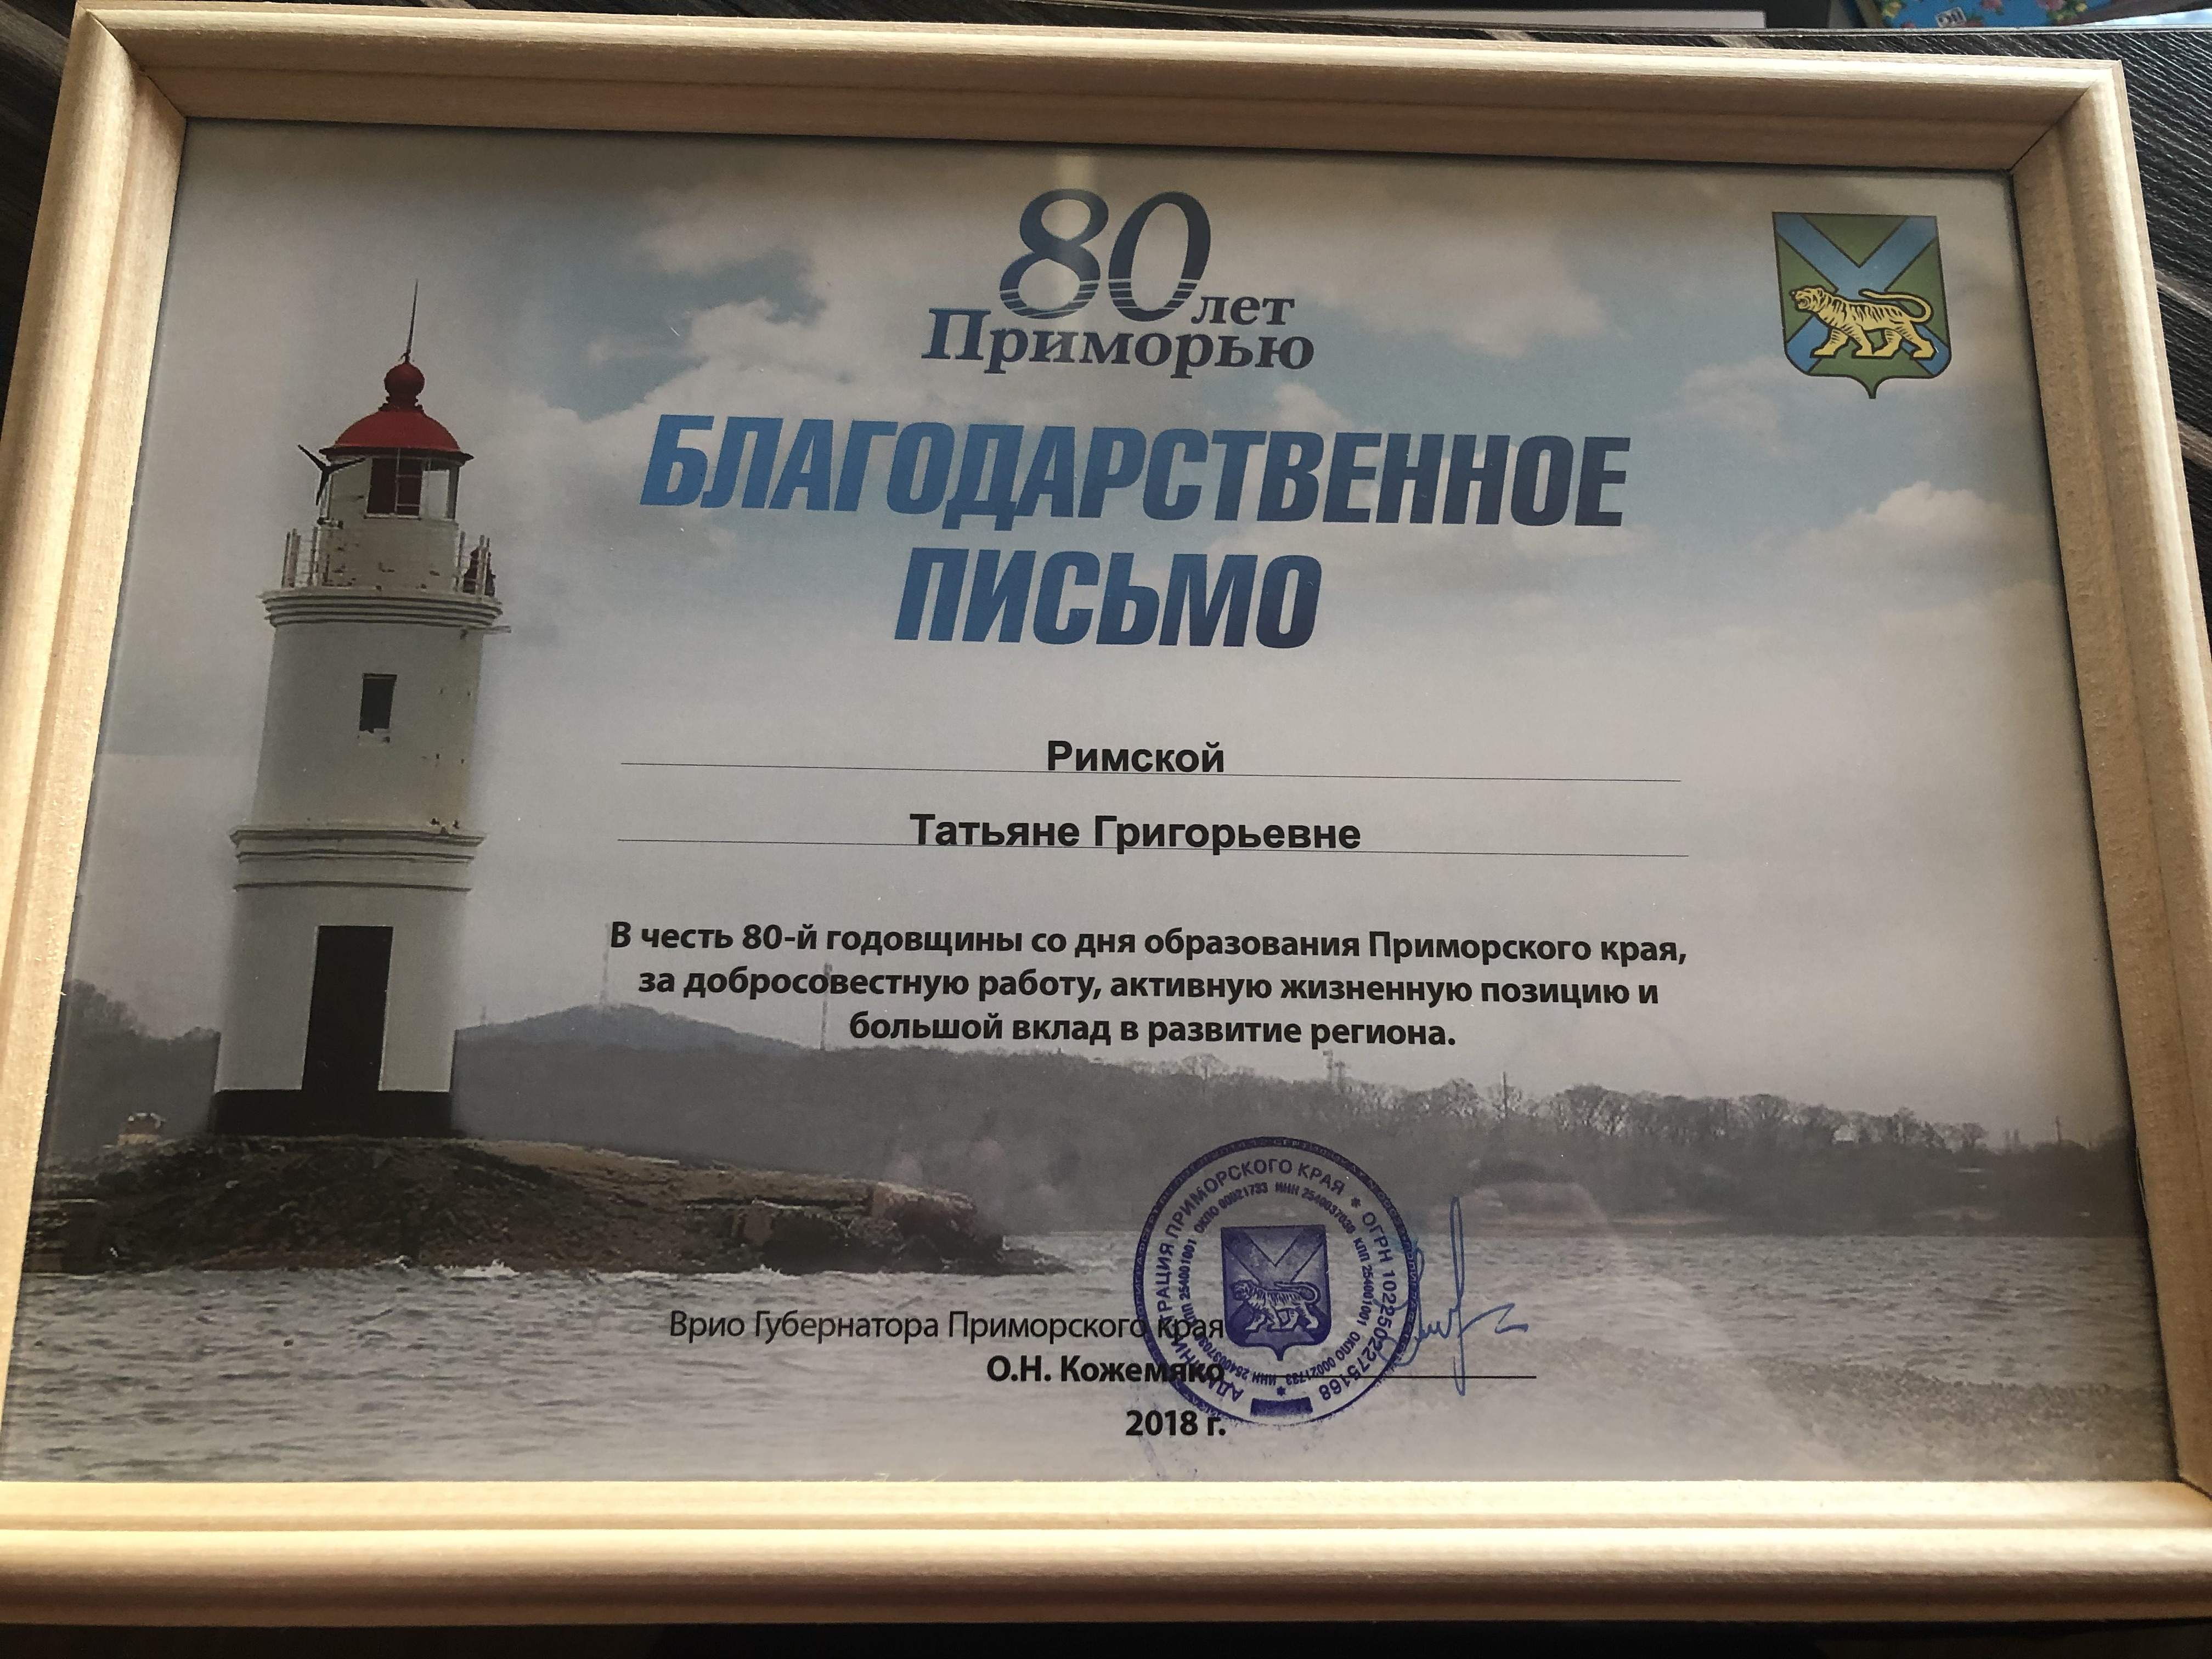 Работа директора филиала отмечена благодарственным письмом врио губернатора Приморского края